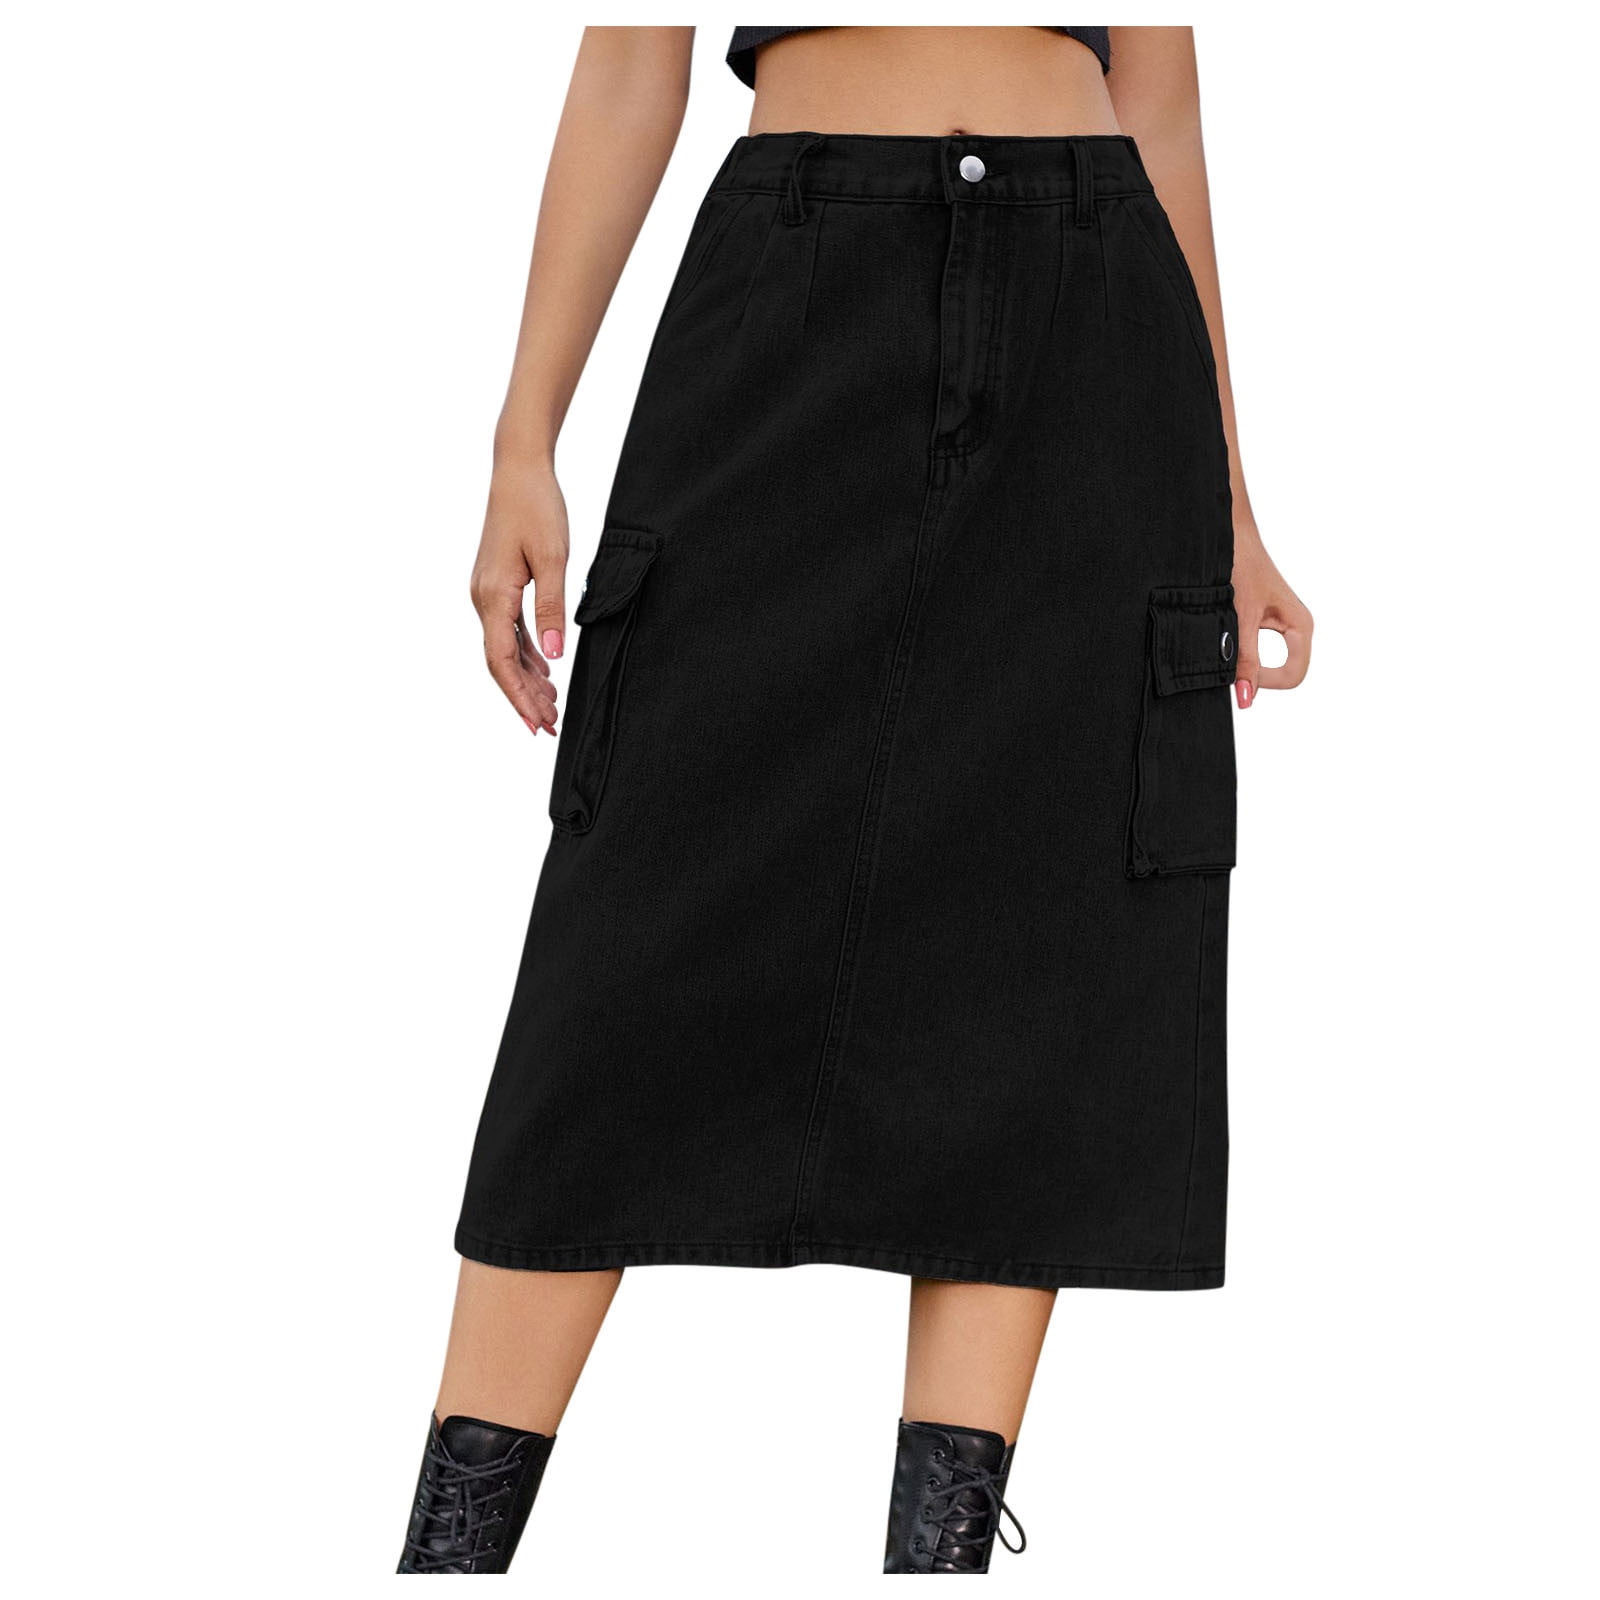 Mitankcoo Women Denim Cargo Long Skirts - High Waisted Pencil Skirt ...